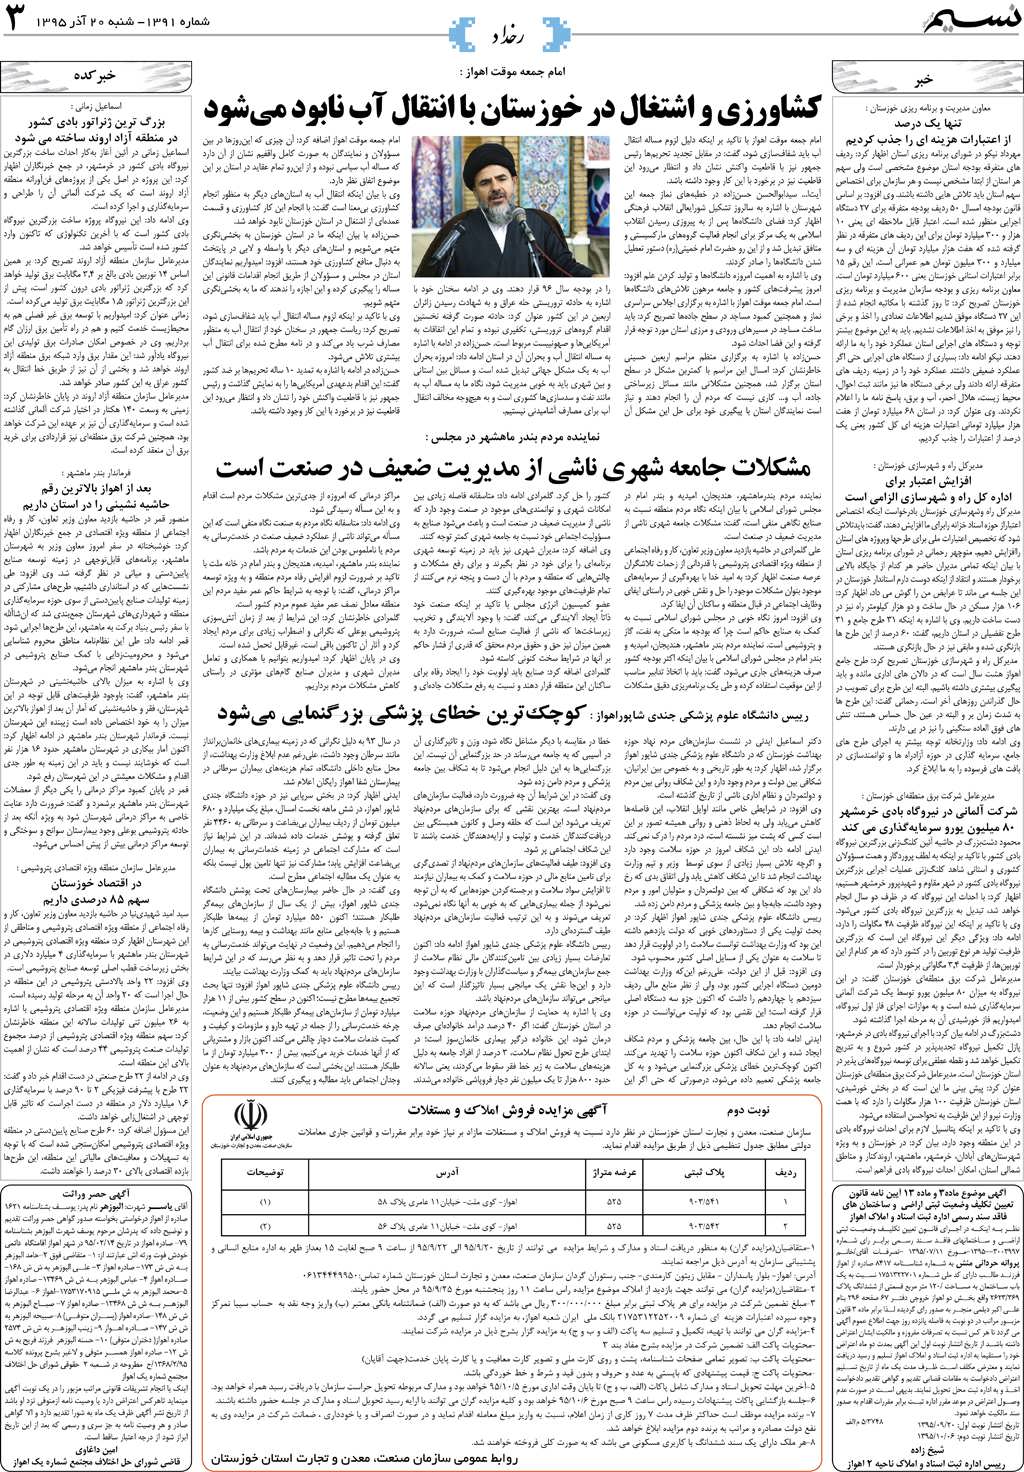 صفحه رخداد روزنامه نسیم شماره 1391